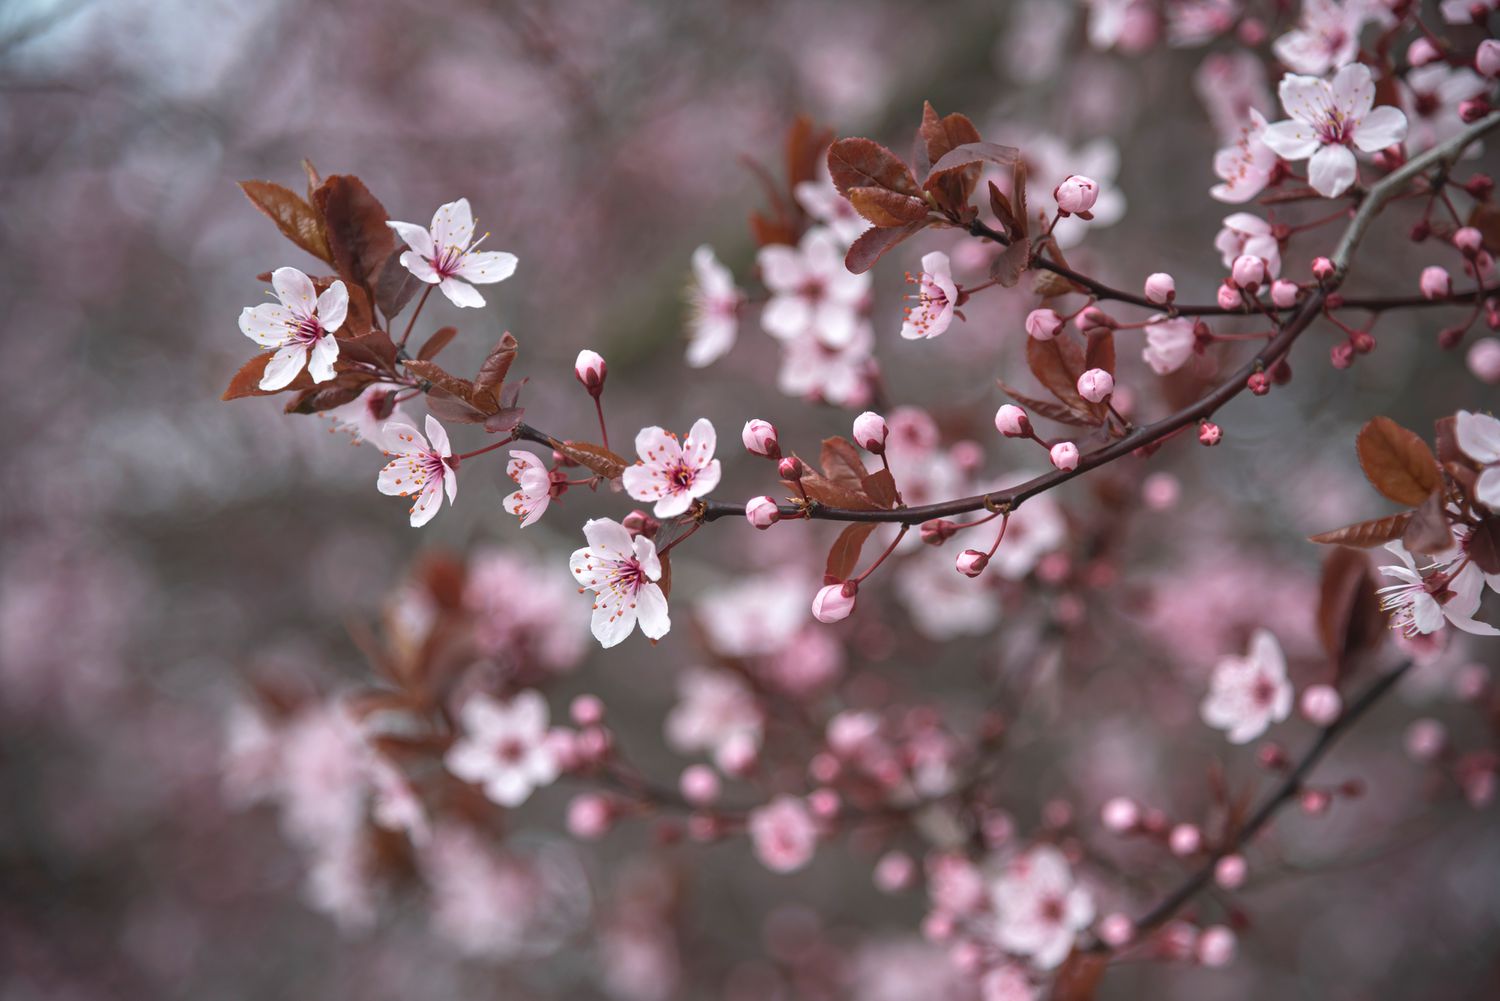 Zweige des lilafarbenen Pflaumenbaums mit kleinen weißen und rosa Blüten mit Knospen und braunen Blättern in Nahaufnahme